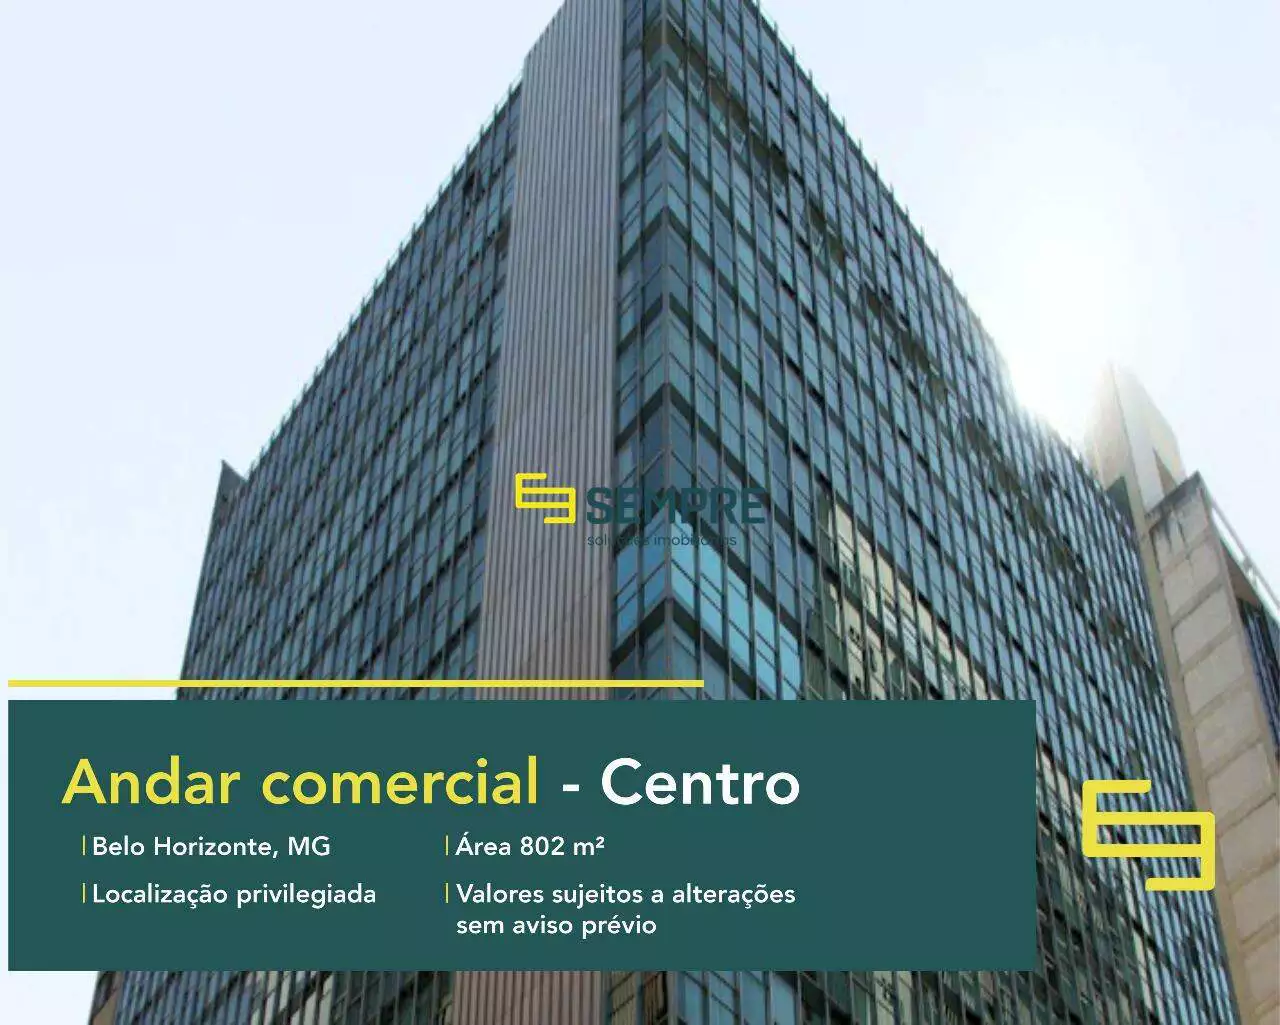 Andar corrido no Edifício Vicente de Araujo para locação - BH, excelente localização. O estabelecimento comercial conta com área de 802 m².